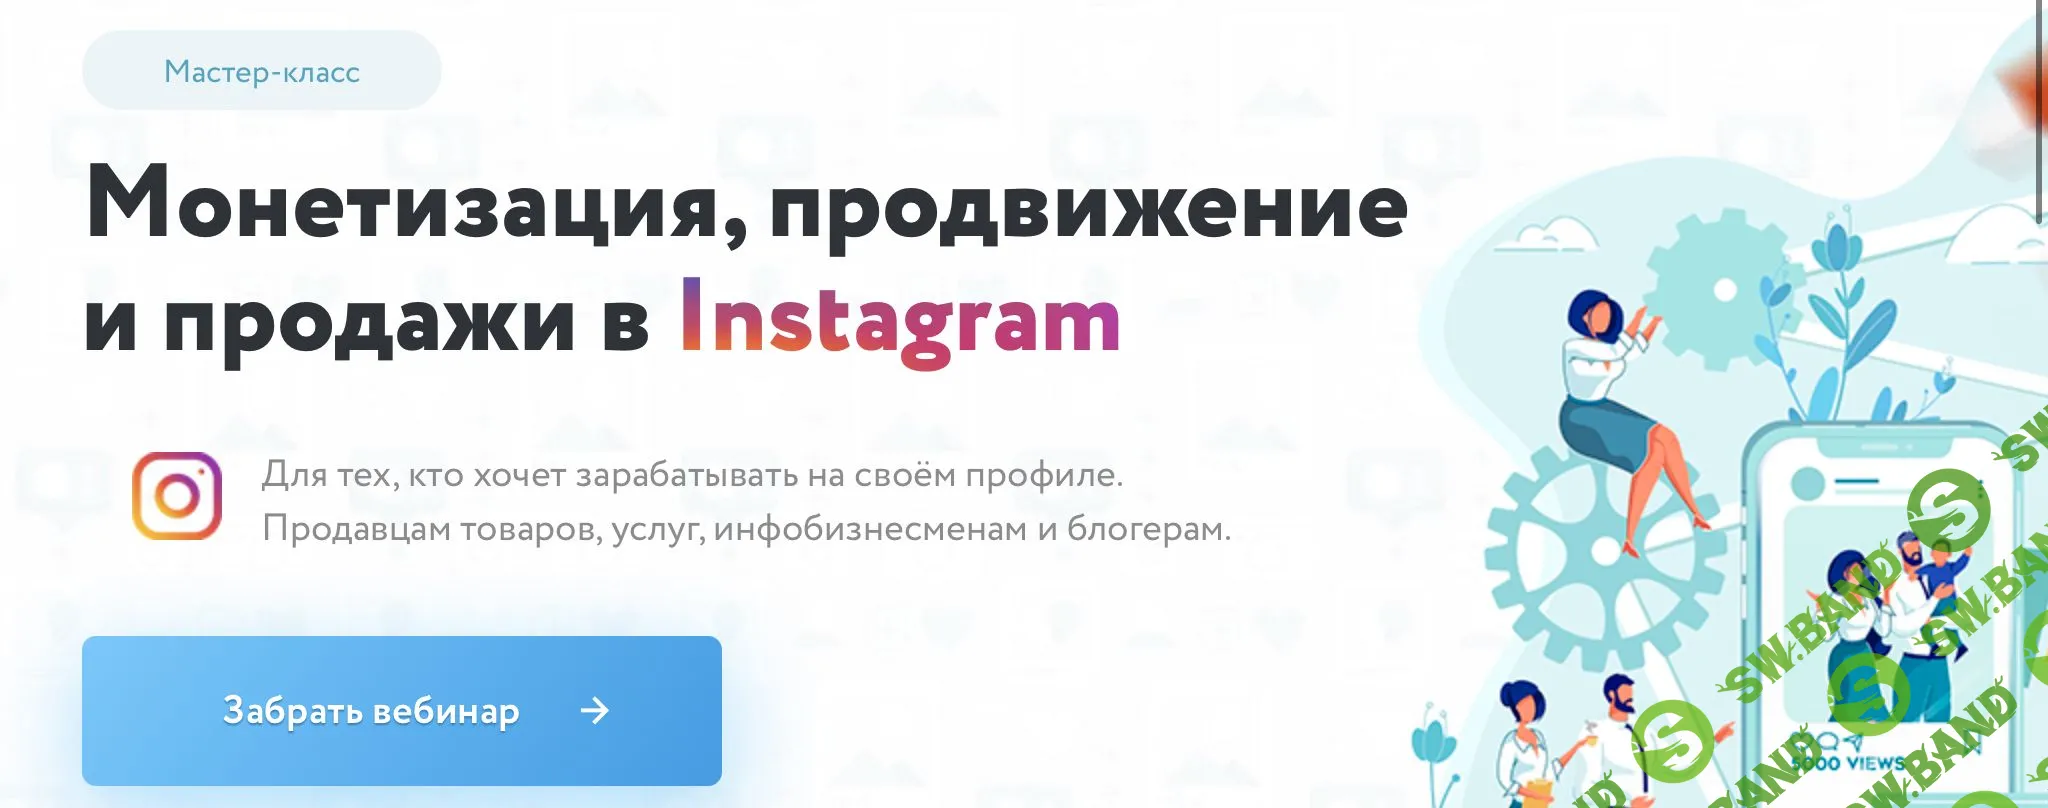 [Игорь Зуевич] Монетизация, продвижение и продажи в Instagram (2020)